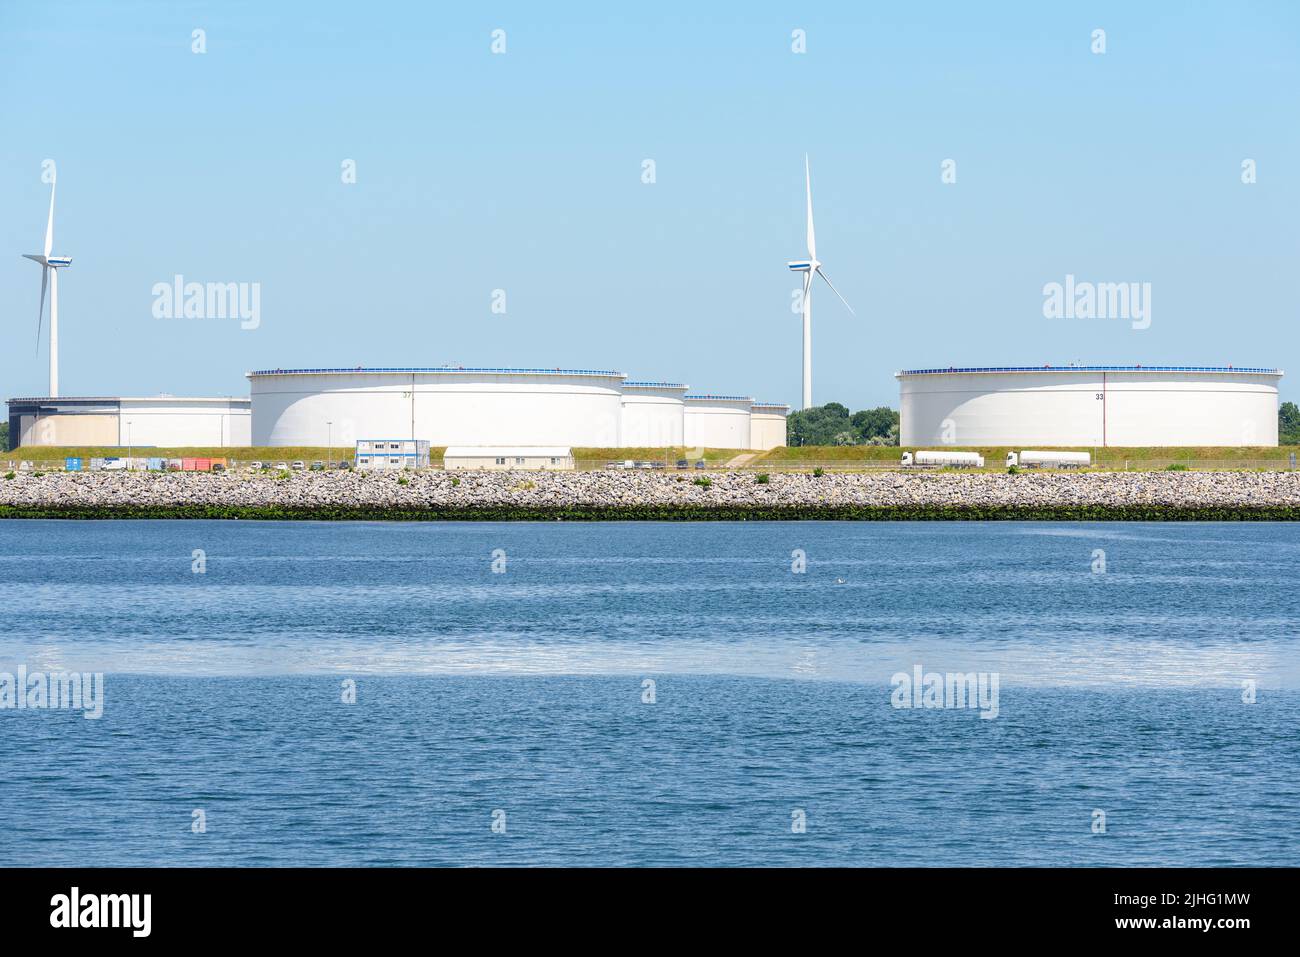 Grandes tanques de aceite en un puerto en un soleado día de verano. Los aerogeneradores están en segundo plano. Foto de stock